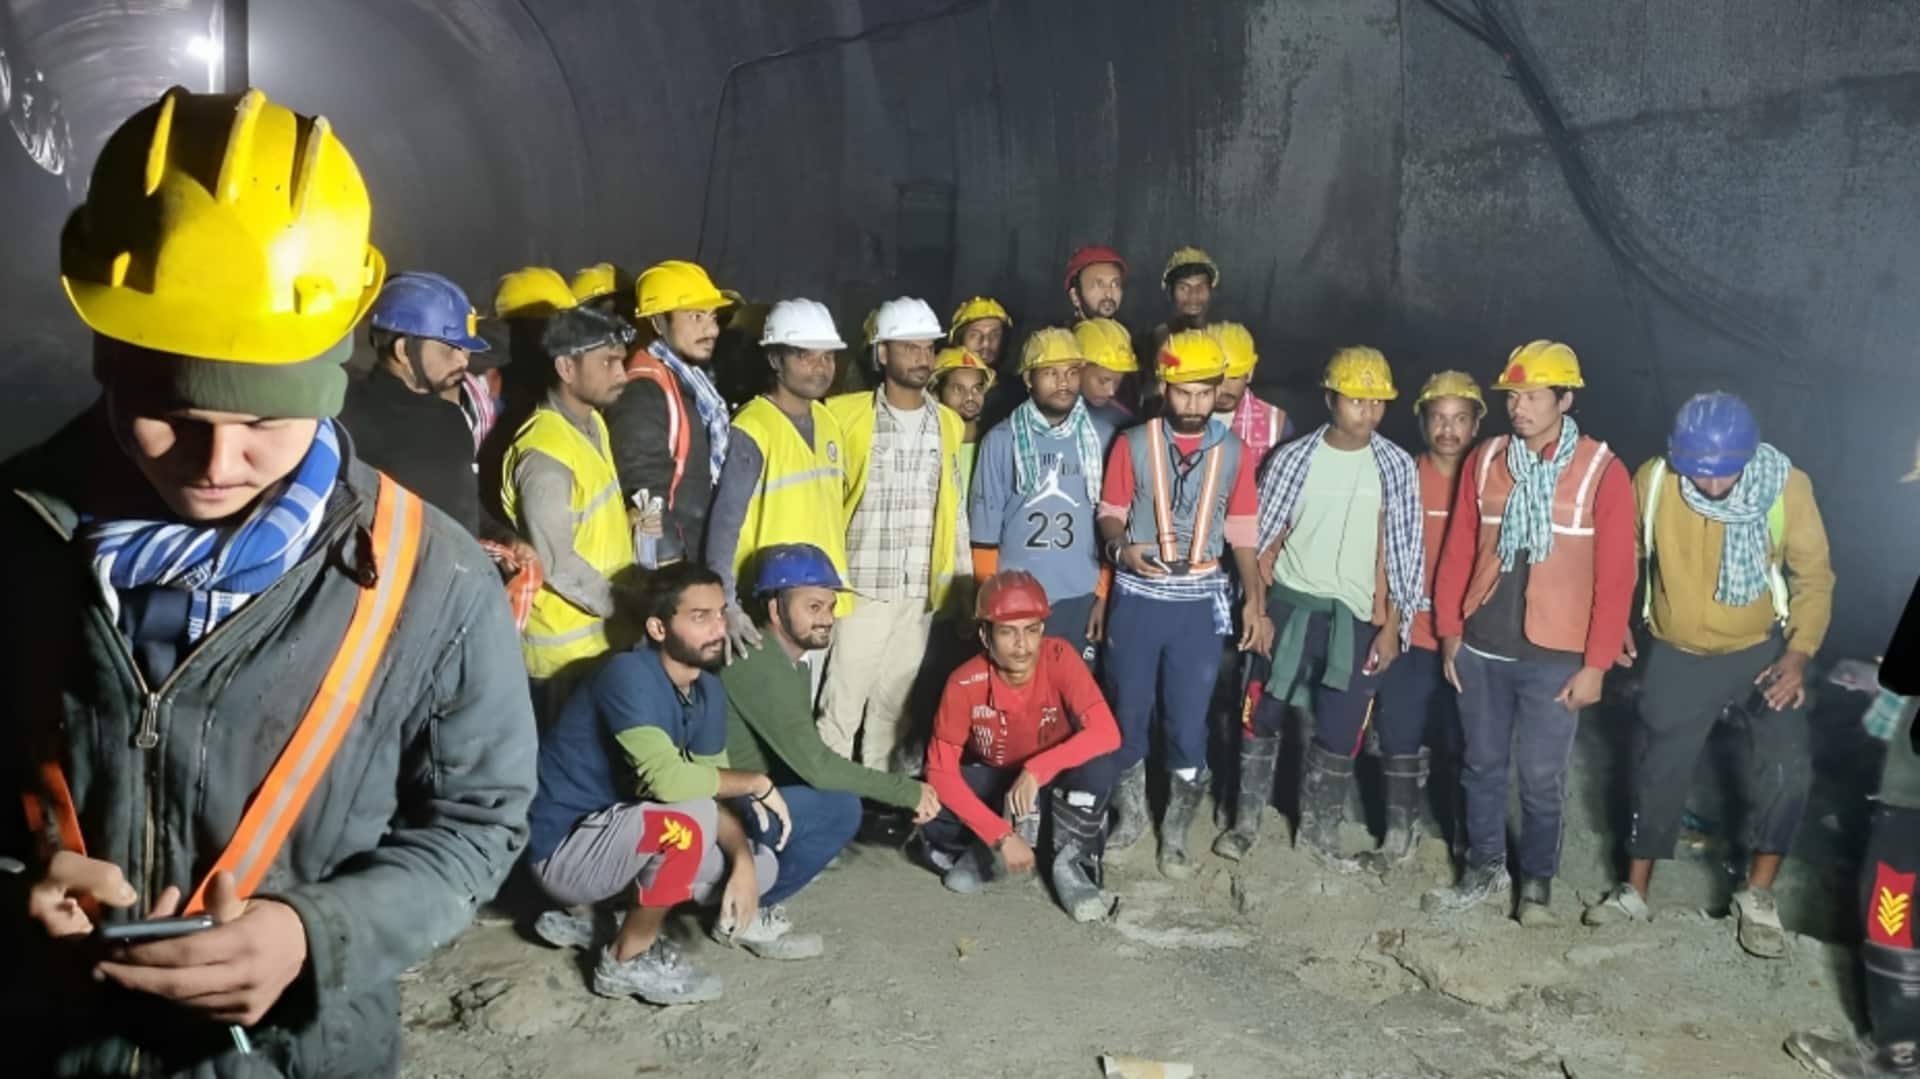 उत्तराखंड: मजदूरों को बचाने वाले रैट माइनर्स को राज्य सरकार देगी 50-50 हजार रुपये का ईनाम